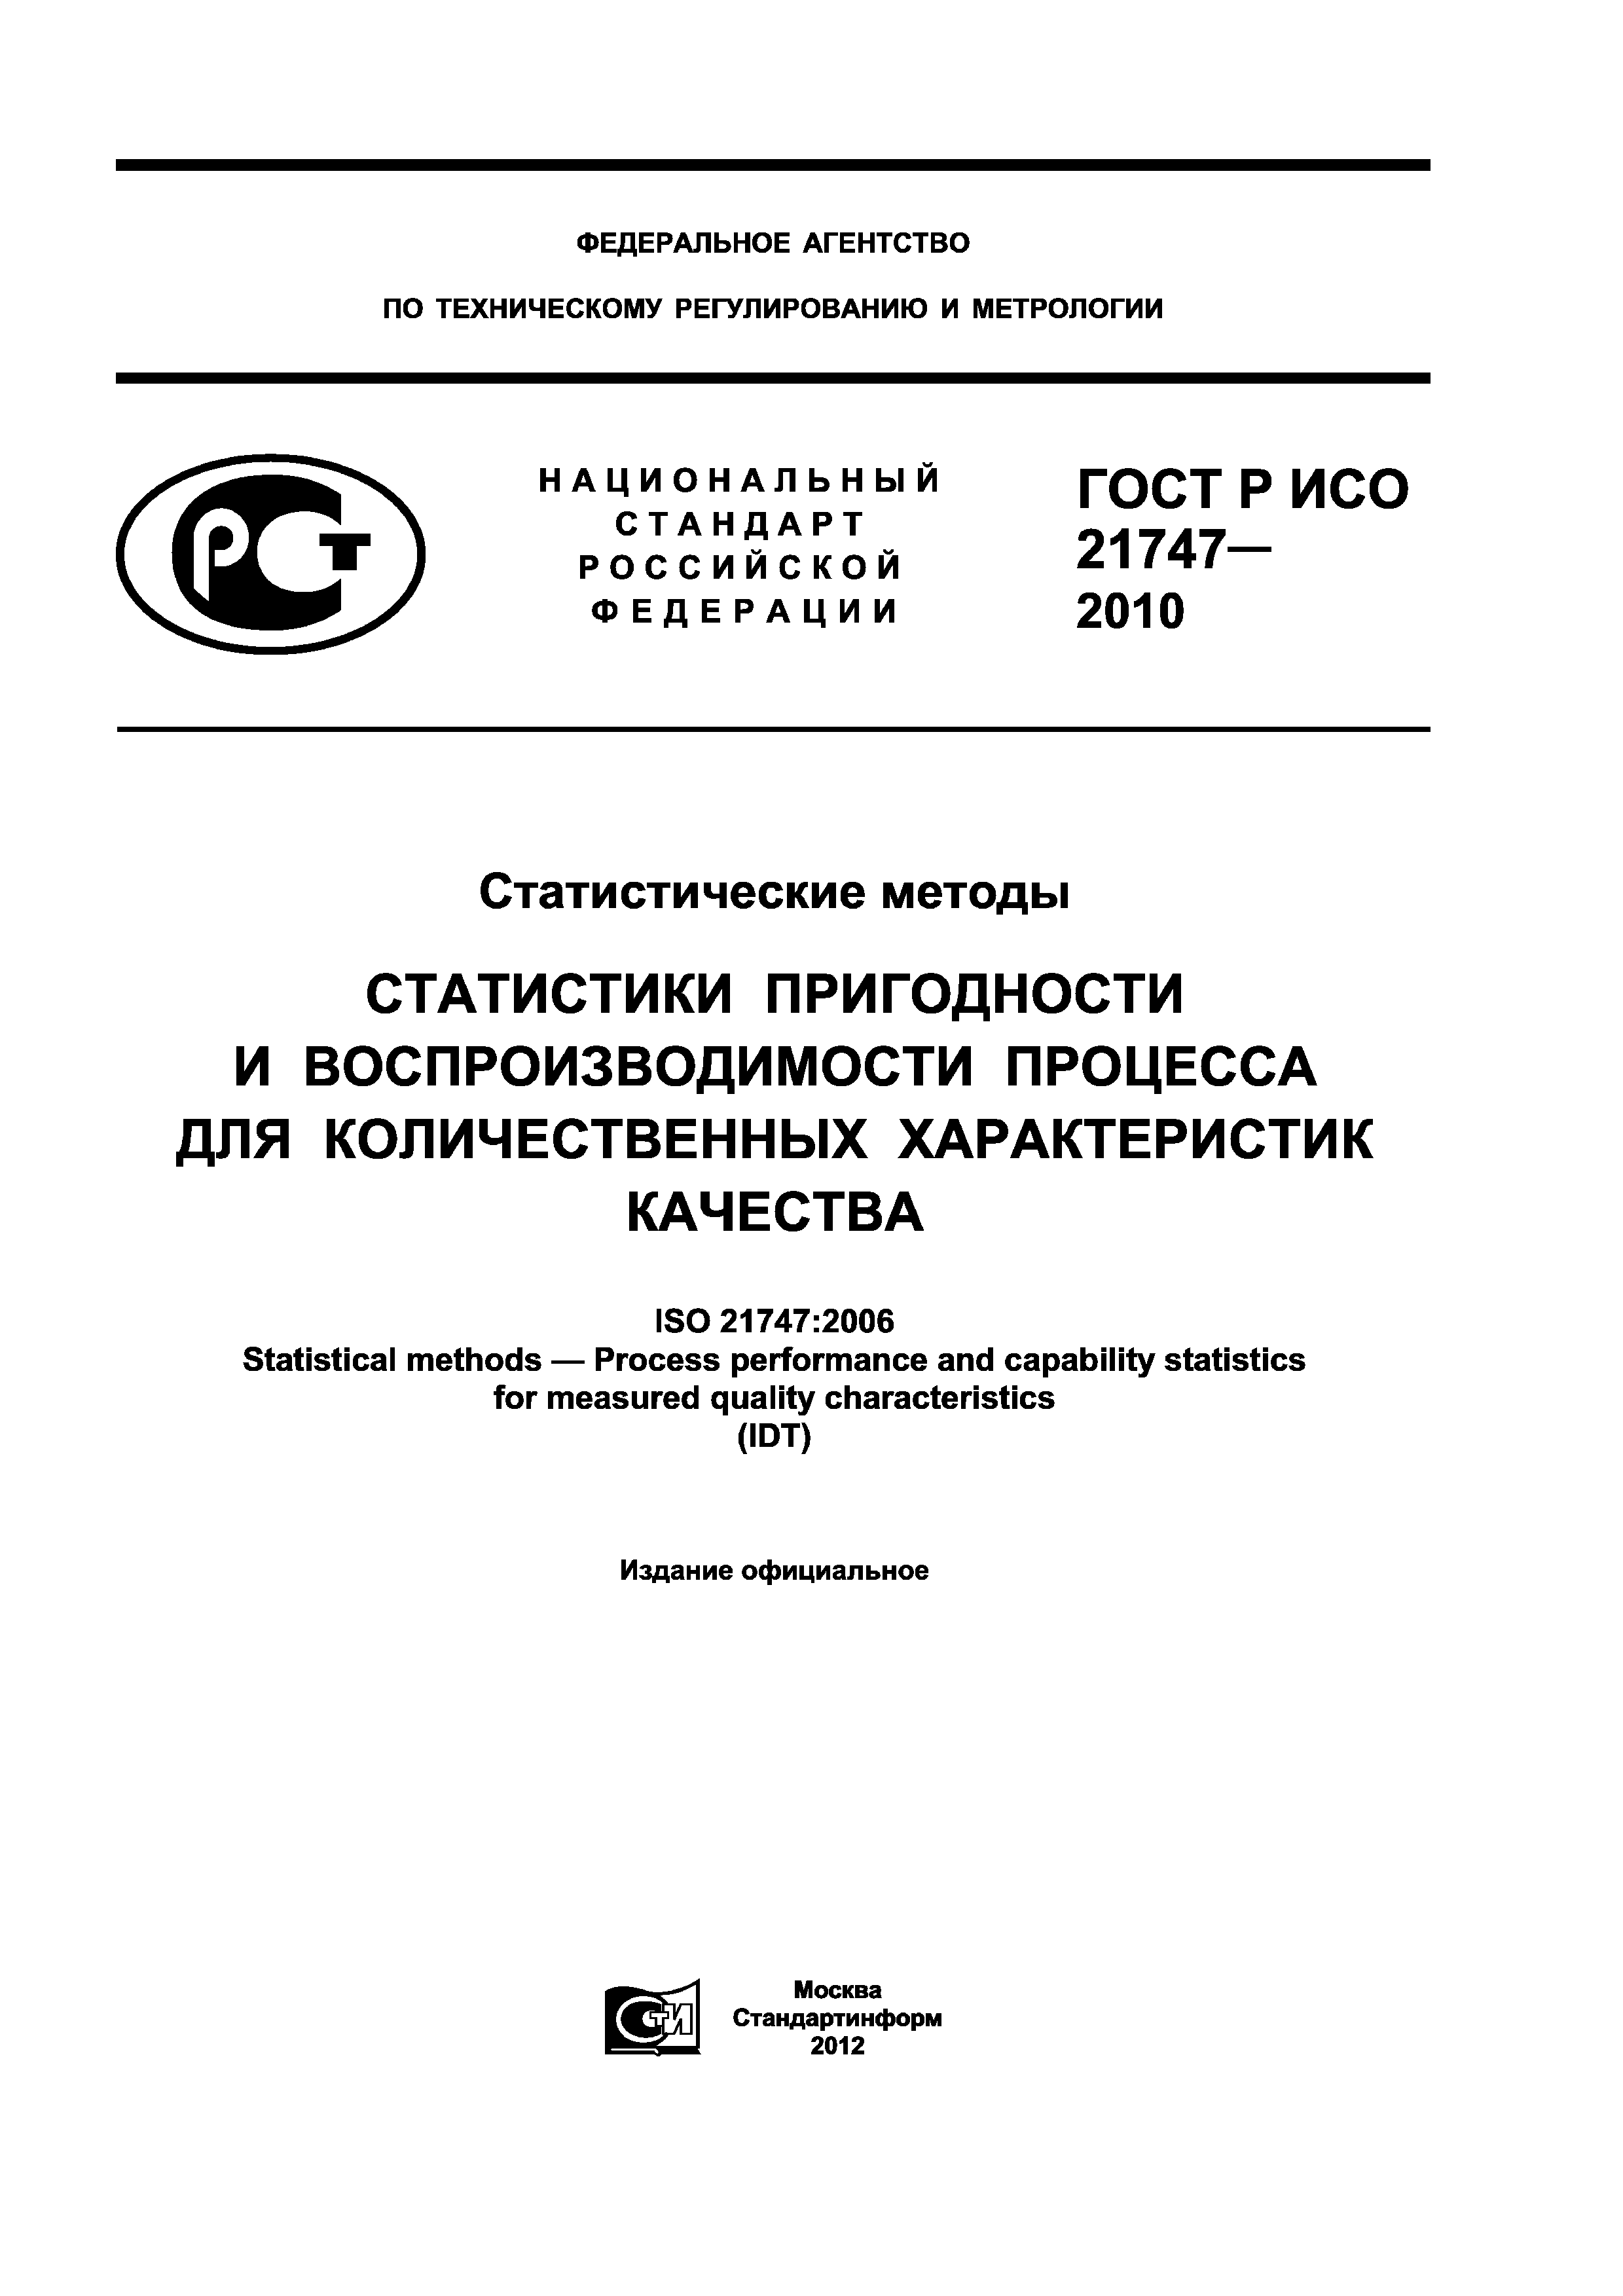 ГОСТ Р ИСО 21747-2010